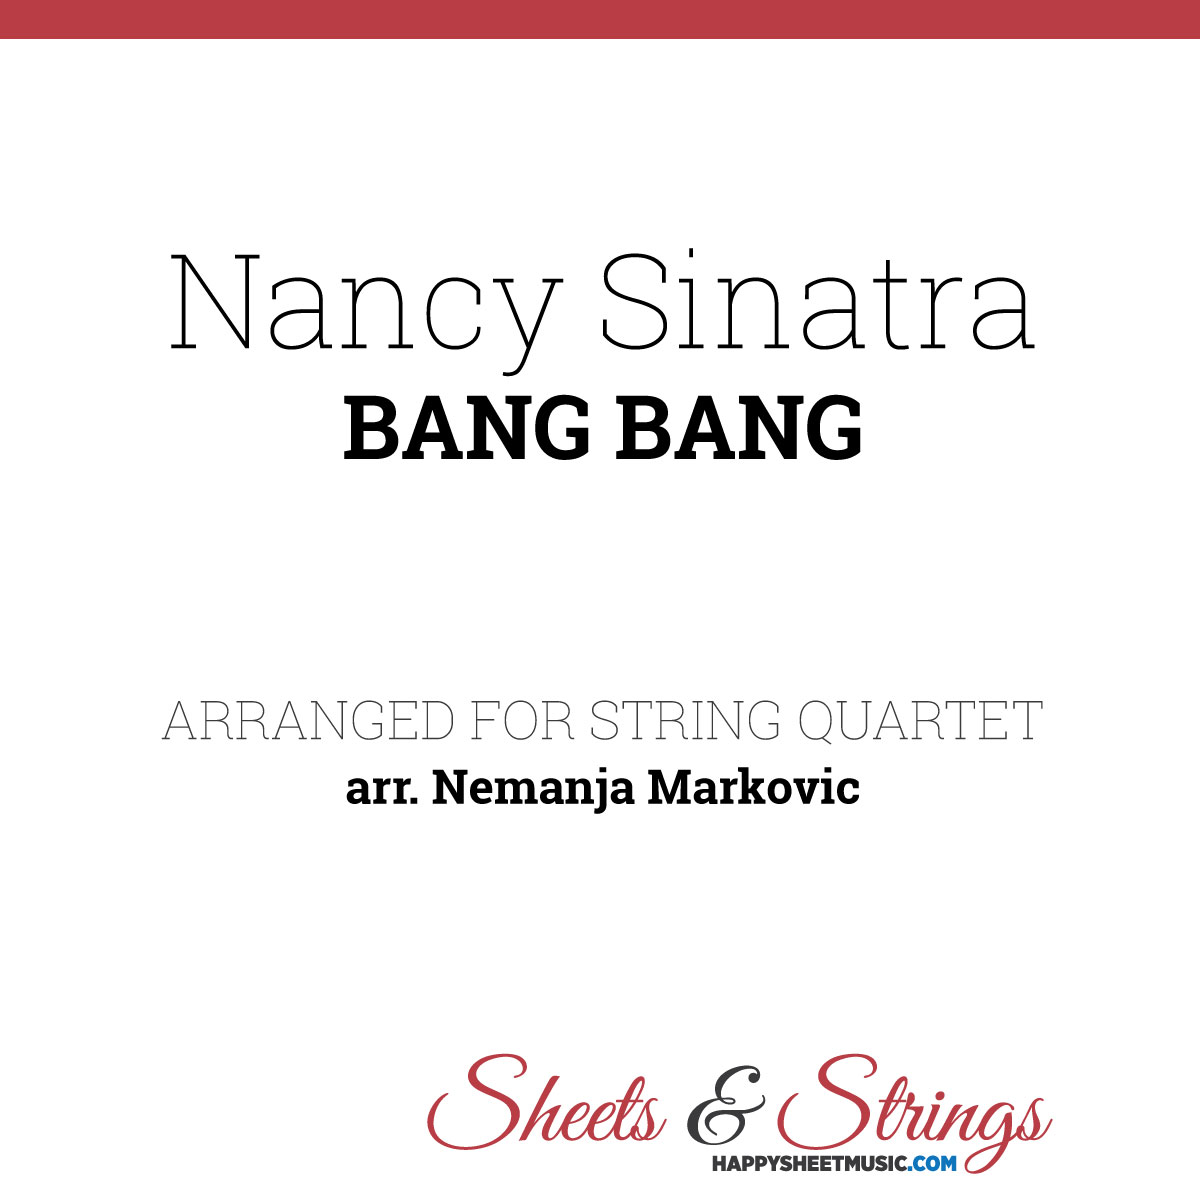 Nancy Sinatra Bang Bang Sheet Music For String Quartet